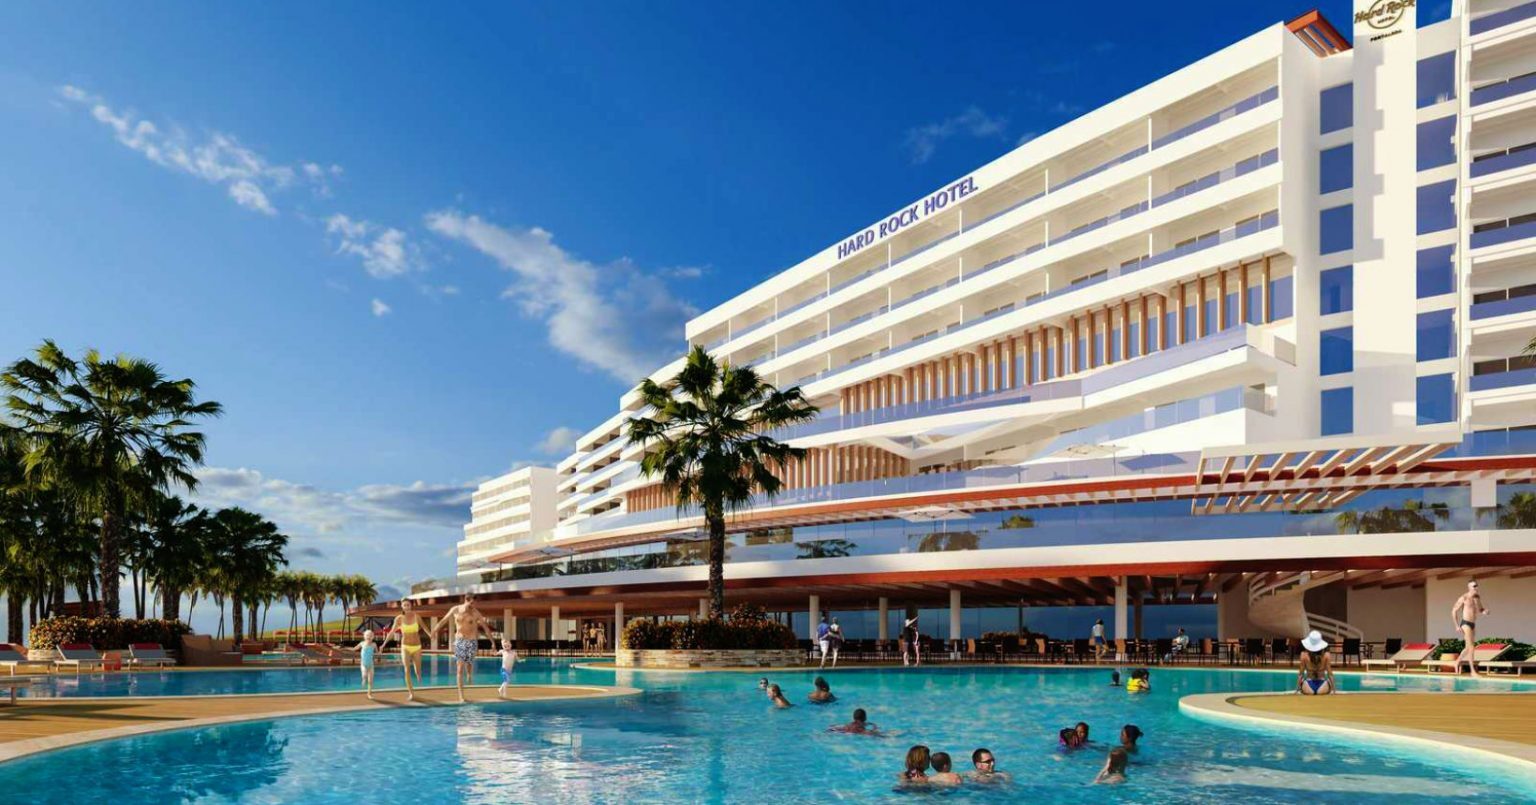 Área da piscina do Hard Rock Hotel Fortaleza, que será o primeiro a ser inaugurado no Brasil